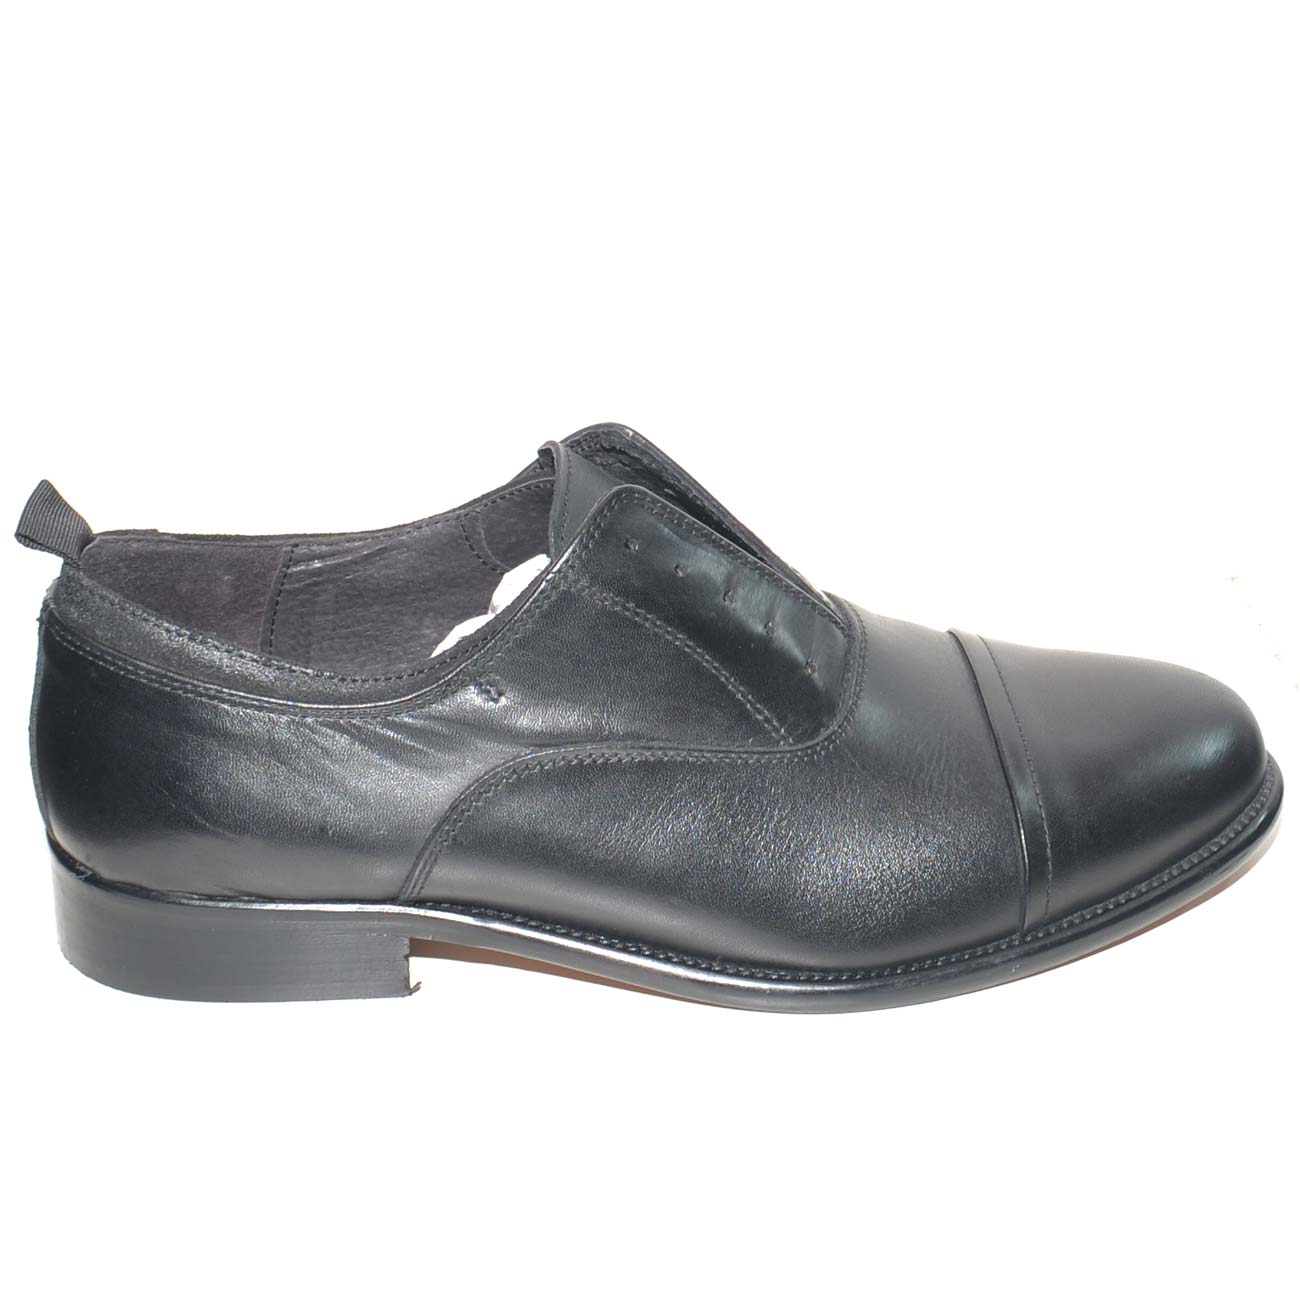 Scarpe uomo francesina elegante punta alzata senza lacci vera pelle lucida  nero made in italy fondo classico handmade uomo classiche Malu Shoes